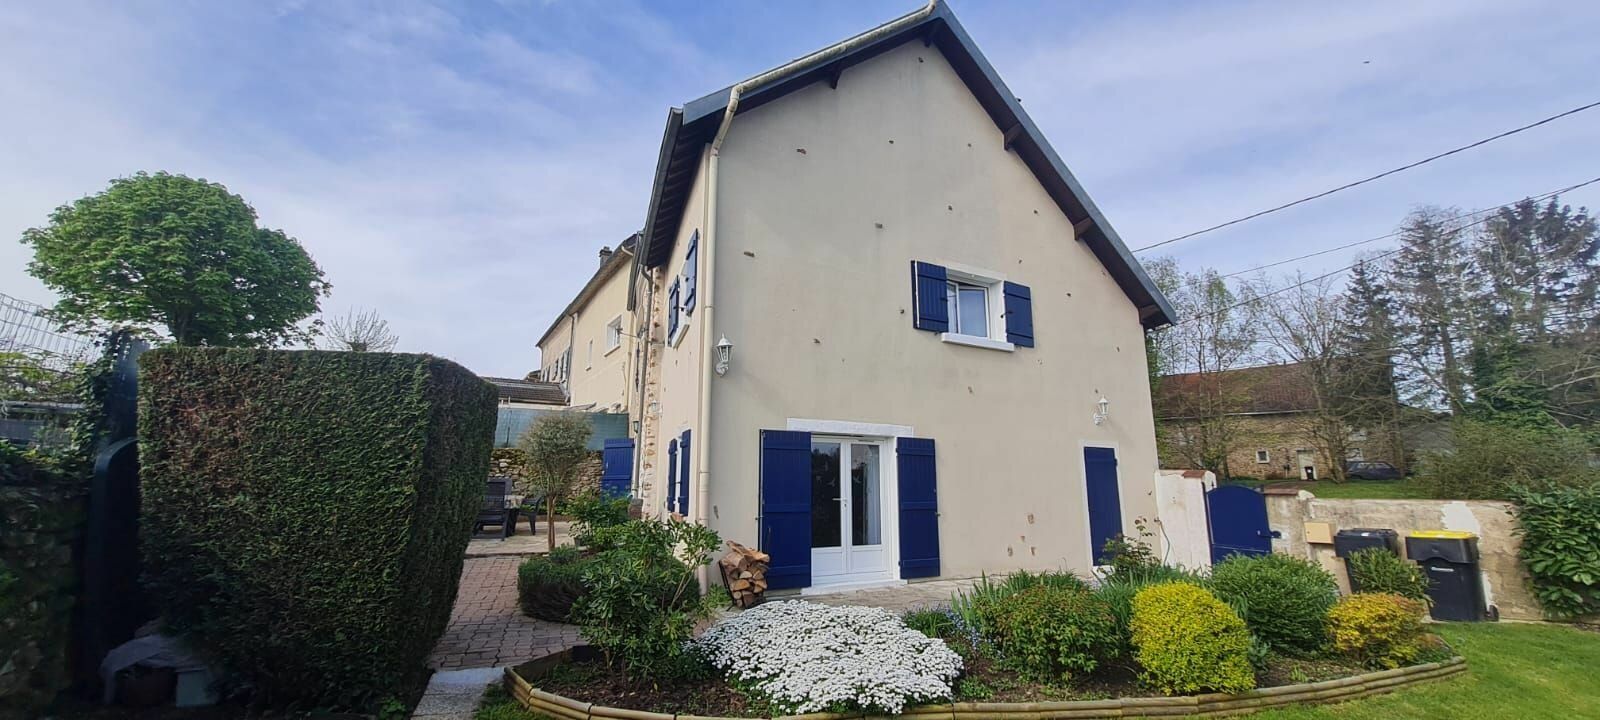 Maison à vendre 4 130m2 à Saâcy-sur-Marne vignette-1